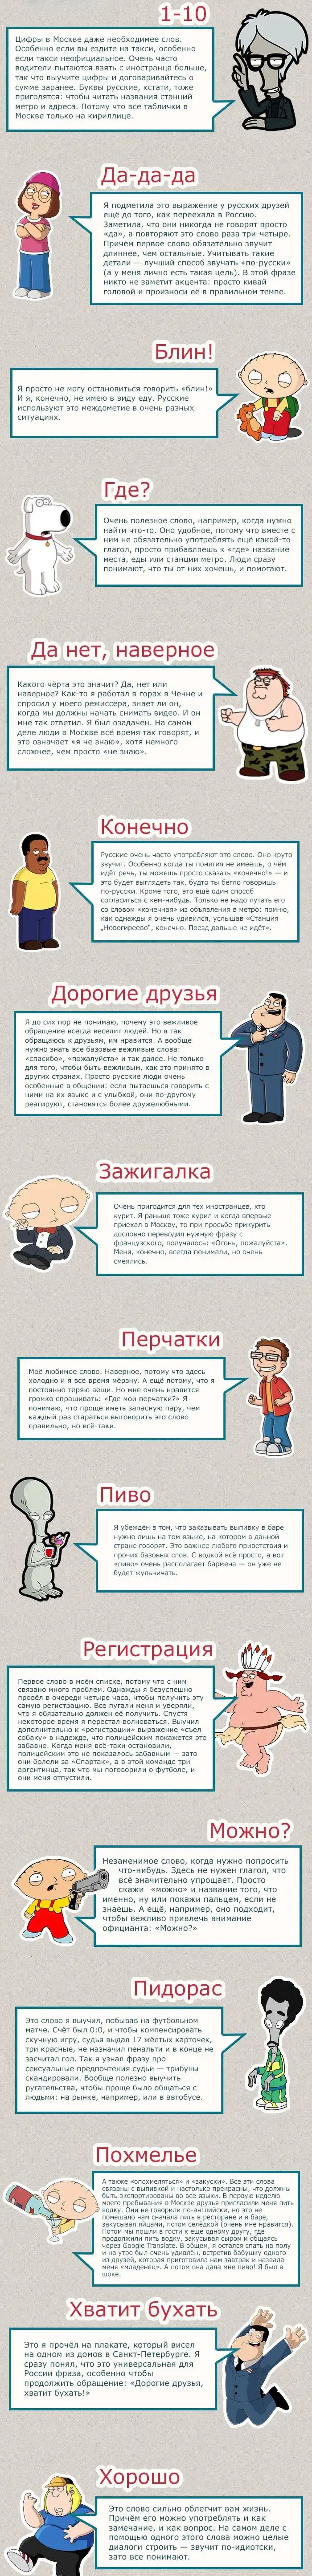 Самые распространенные слова в русском языке